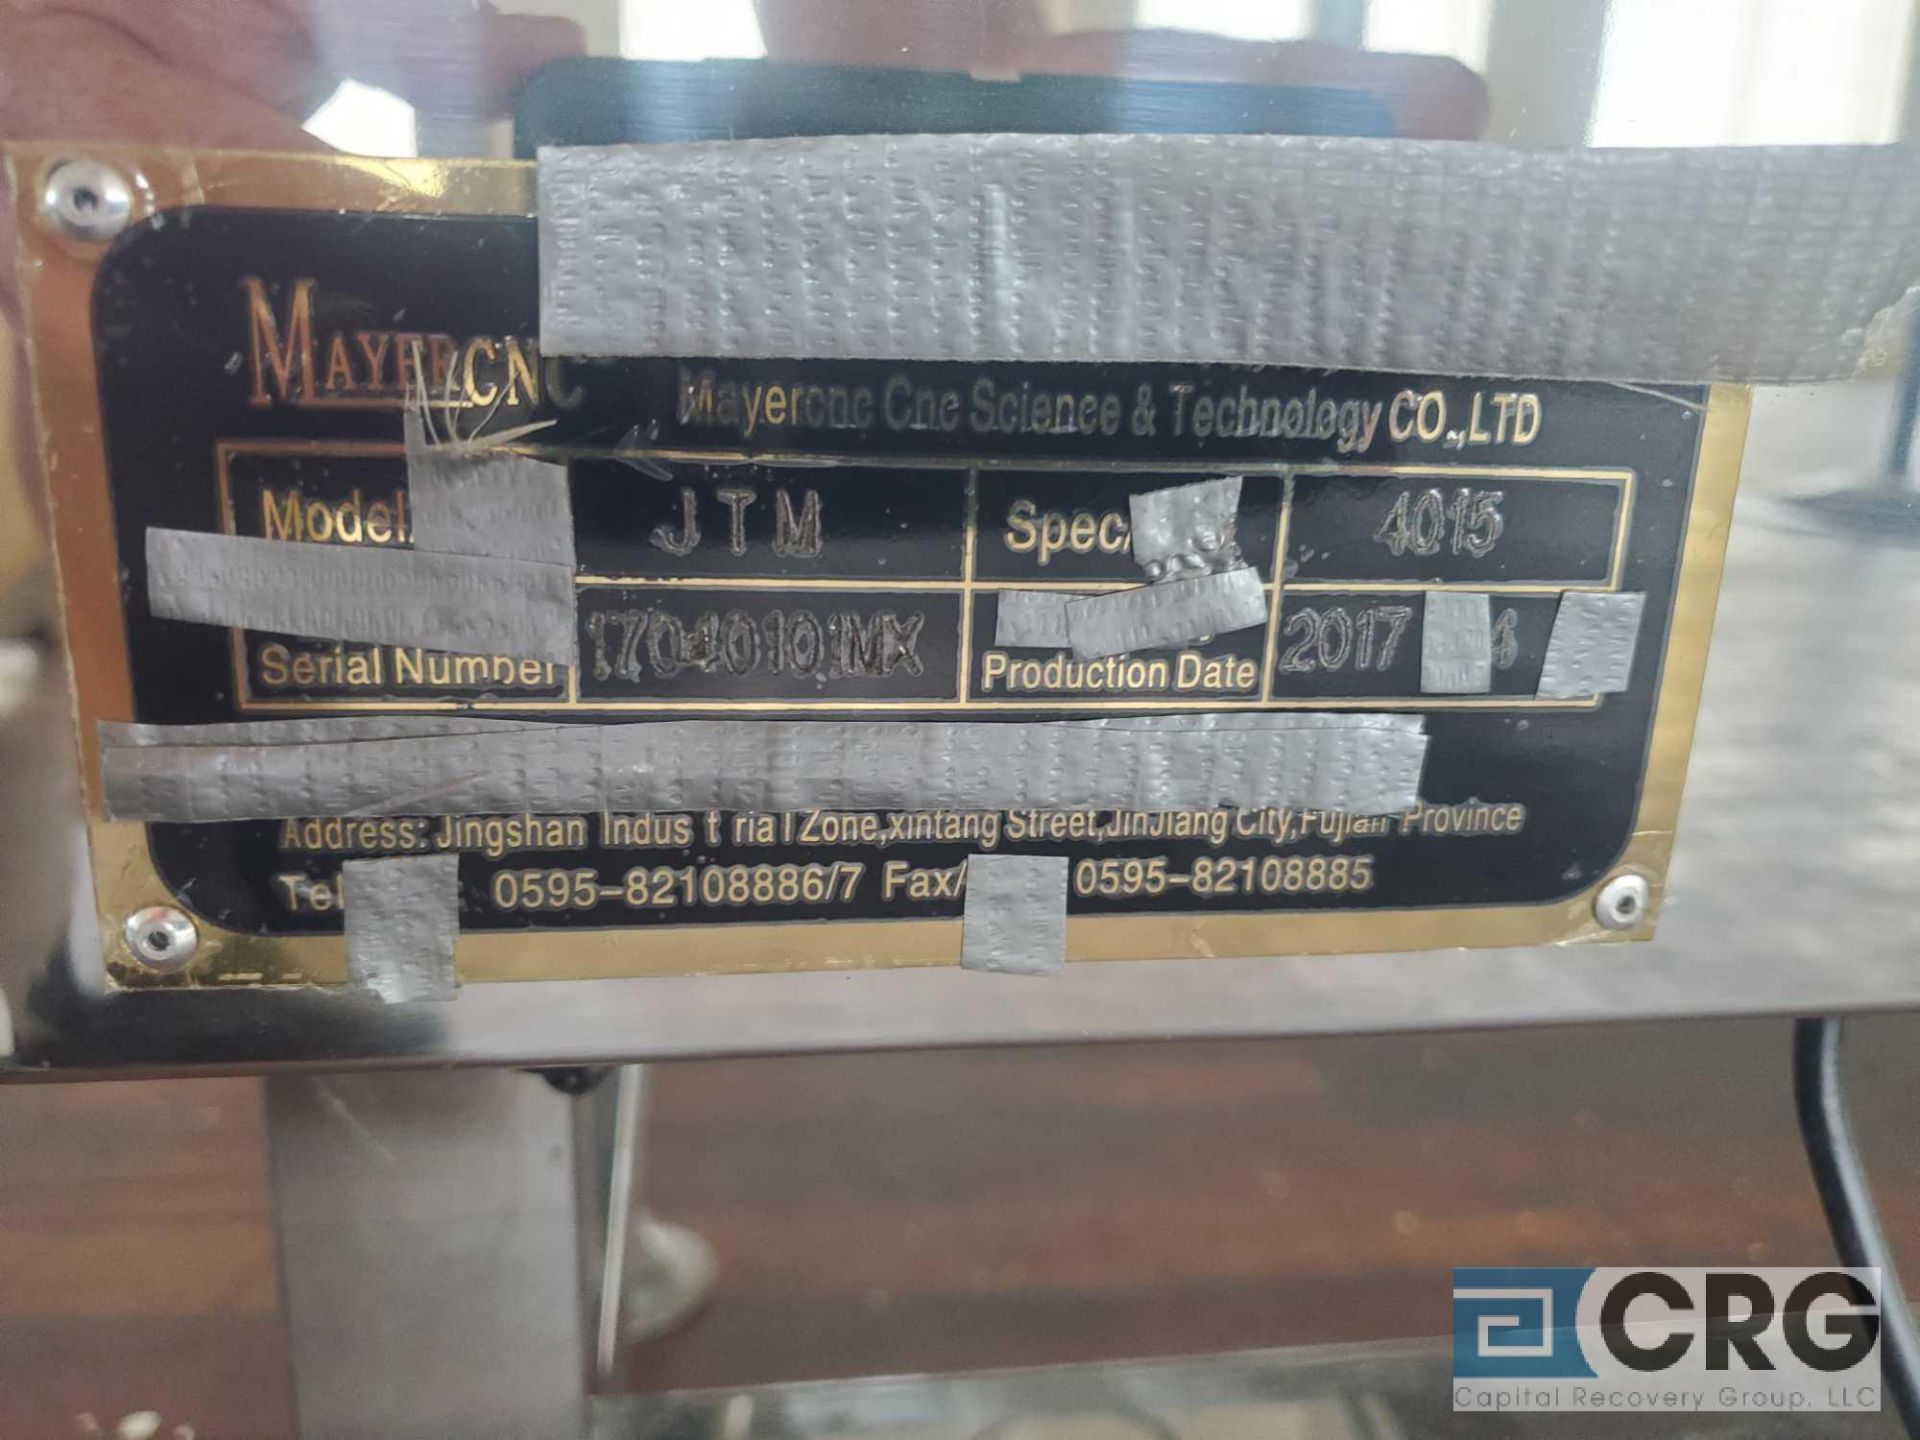 2017 Mayer CNC metal detector, model JTM, S/N 1701010MX, 16 inch wide soft plastic belt, 5 ft - Image 5 of 5